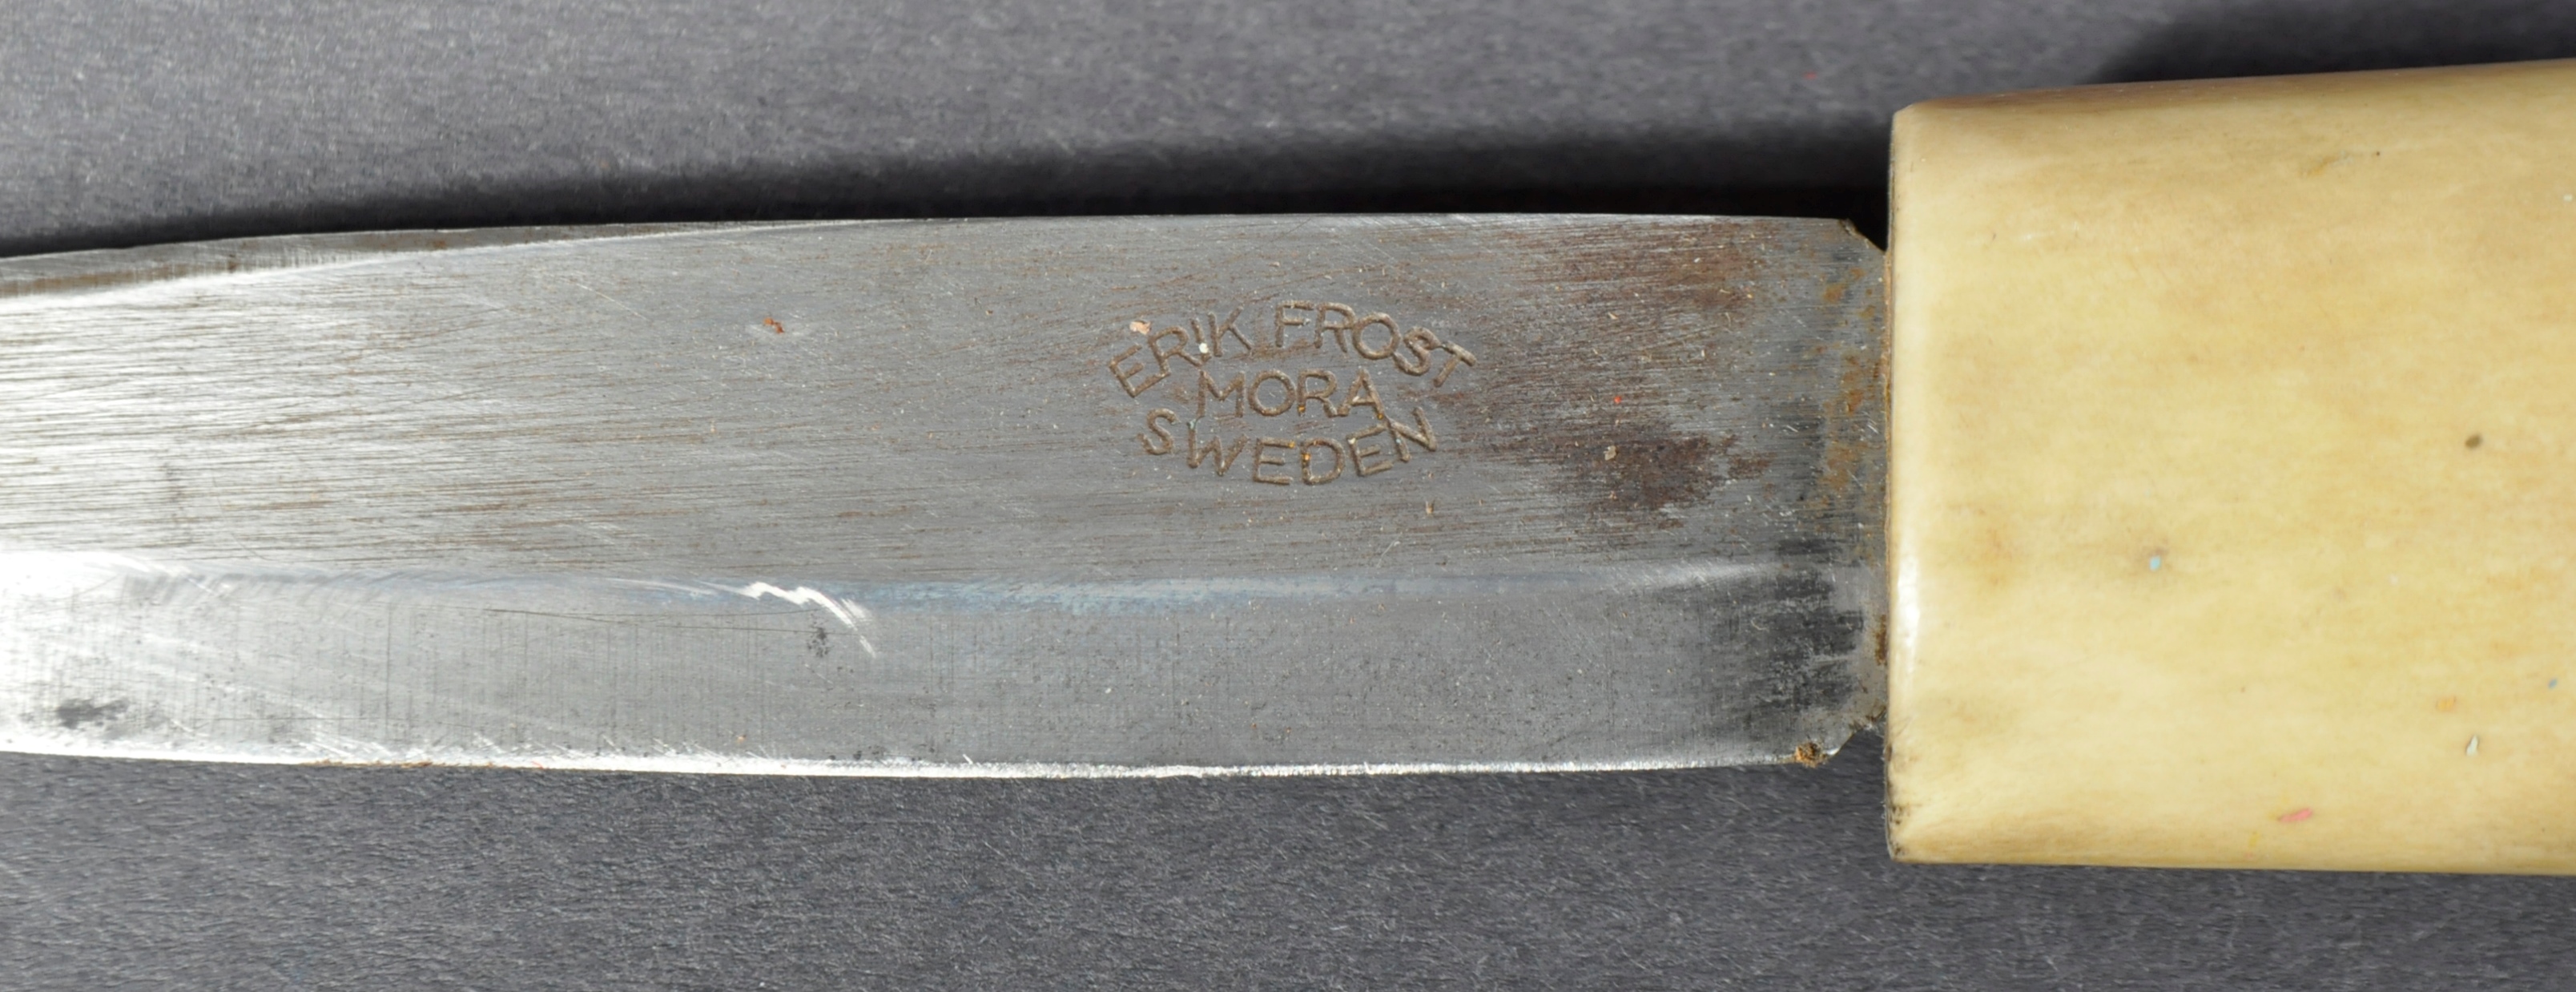 ERIK FROST - MORA - SWEDEN - ANTLER HANDLED DAGGER / KNIFE - Image 4 of 5